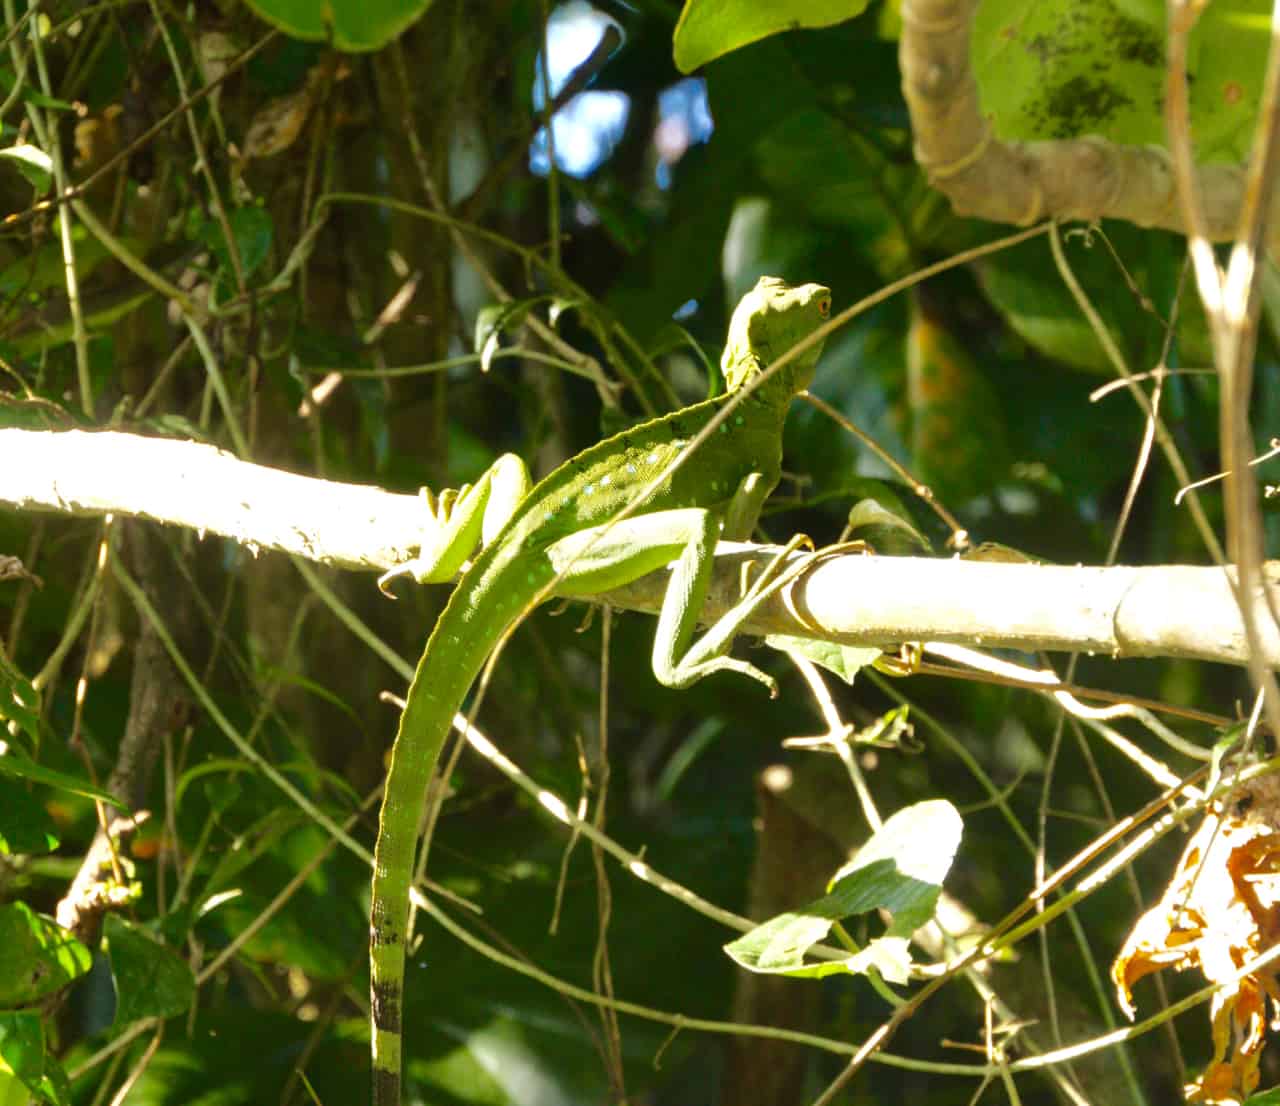  Un basilic vert femelle repose sur une branche à Tortuguero, l'un des parcs les plus riches en biodiversité du Costa Rica.